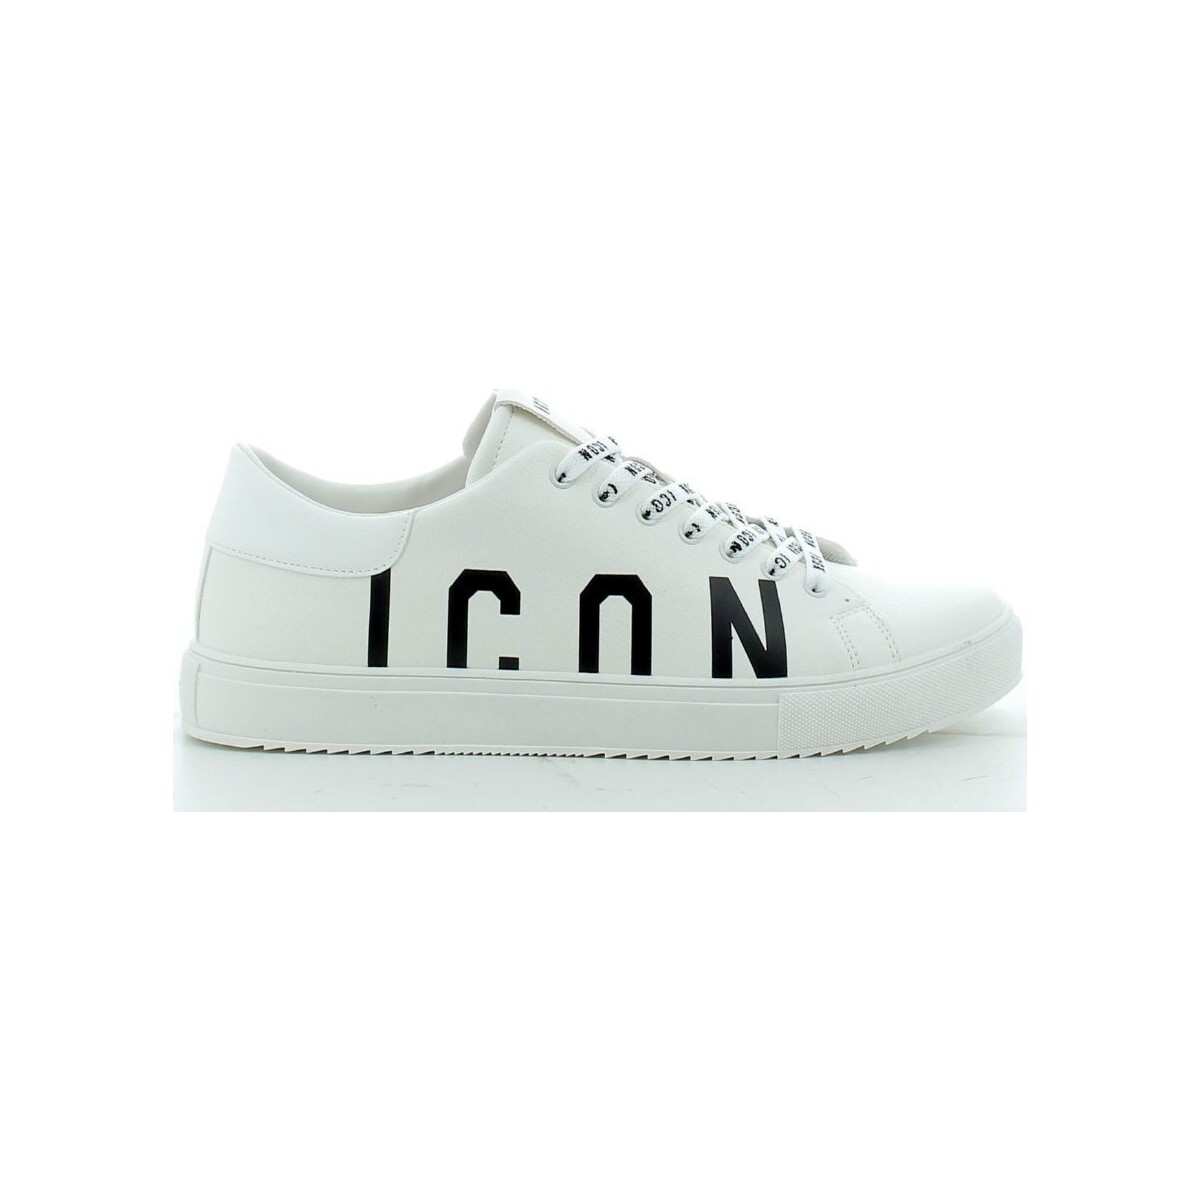 Scarpe Uomo Sneakers Icon ICOUSC60102P24 Bianco